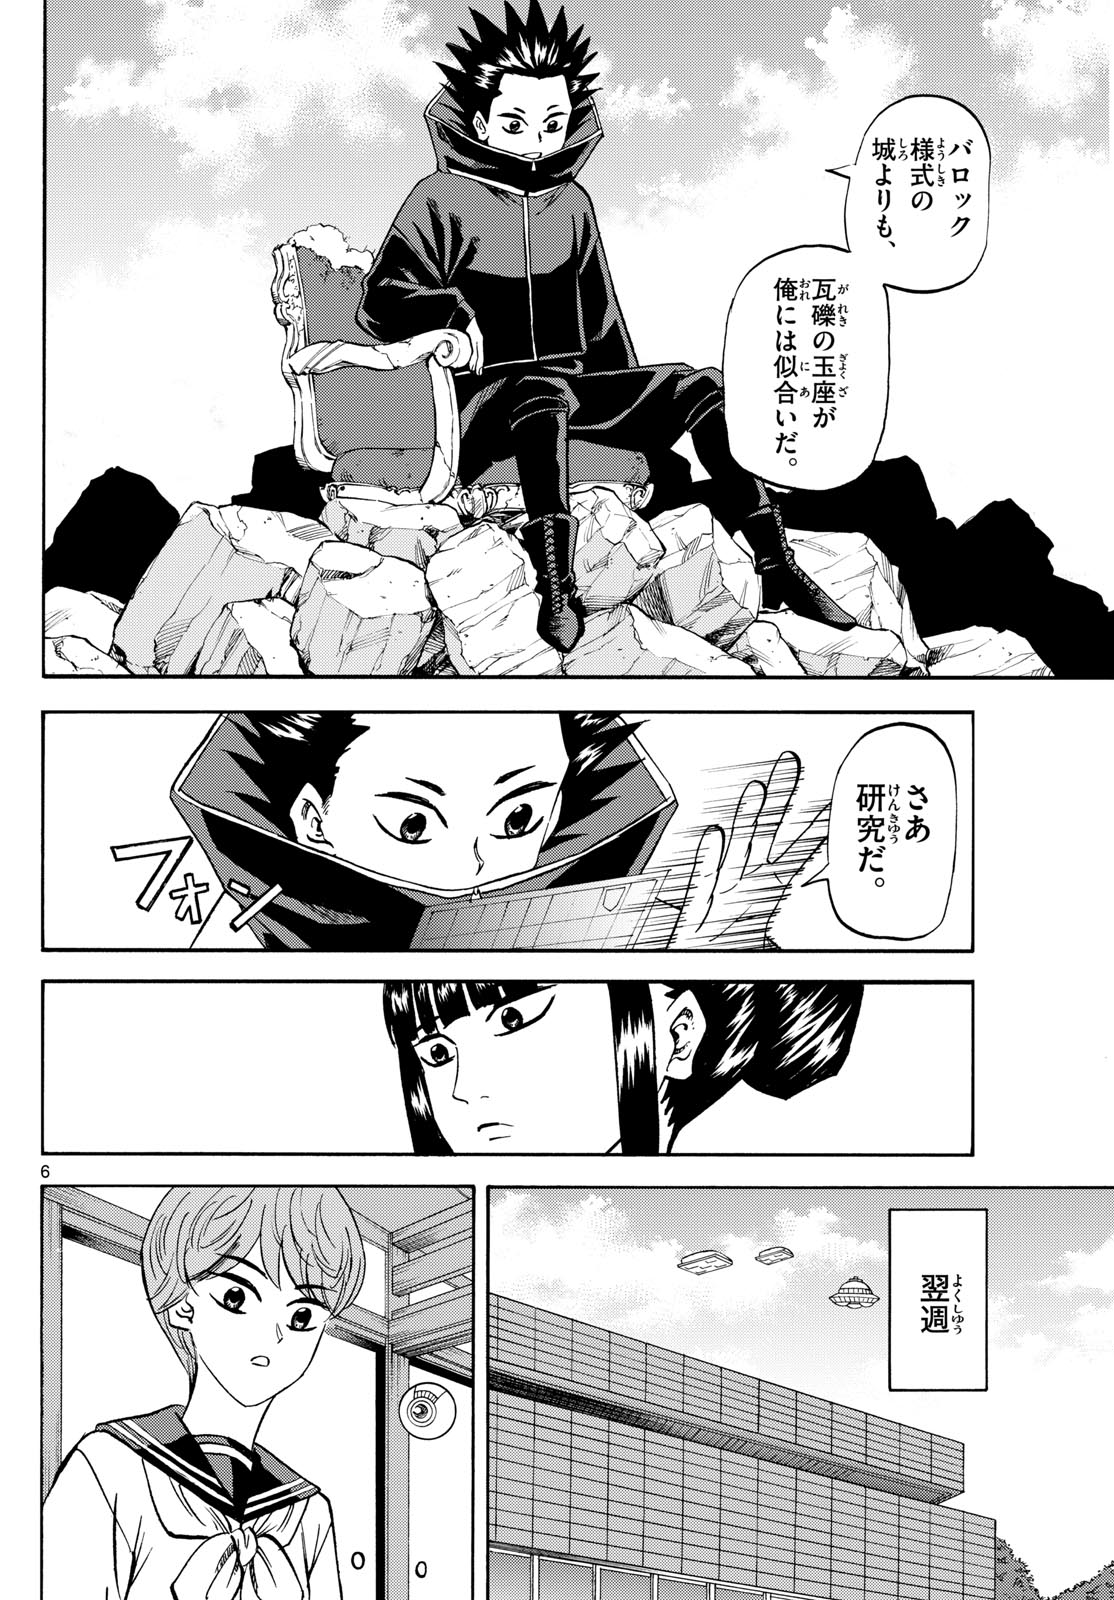 Tatsu to Ichigo - Chapter 191 - Page 6